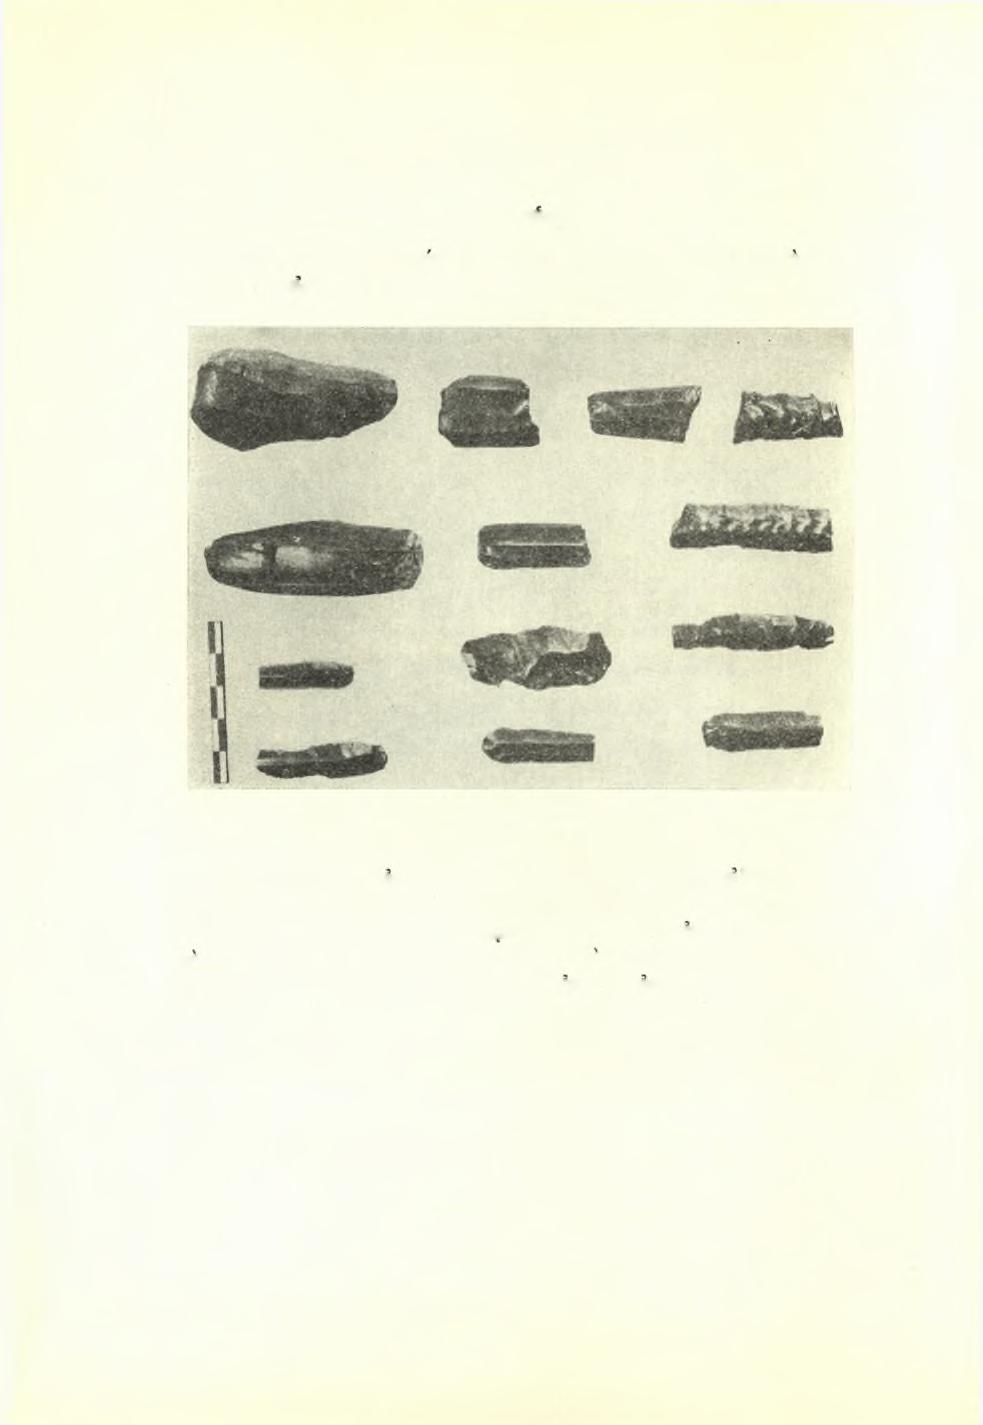 92 Πρακτικά τής Αρχαιολογικής 'Εταιρείας 1951 Διάφορα ευρήματα Μικρόν τμήμα μαρμάρινου